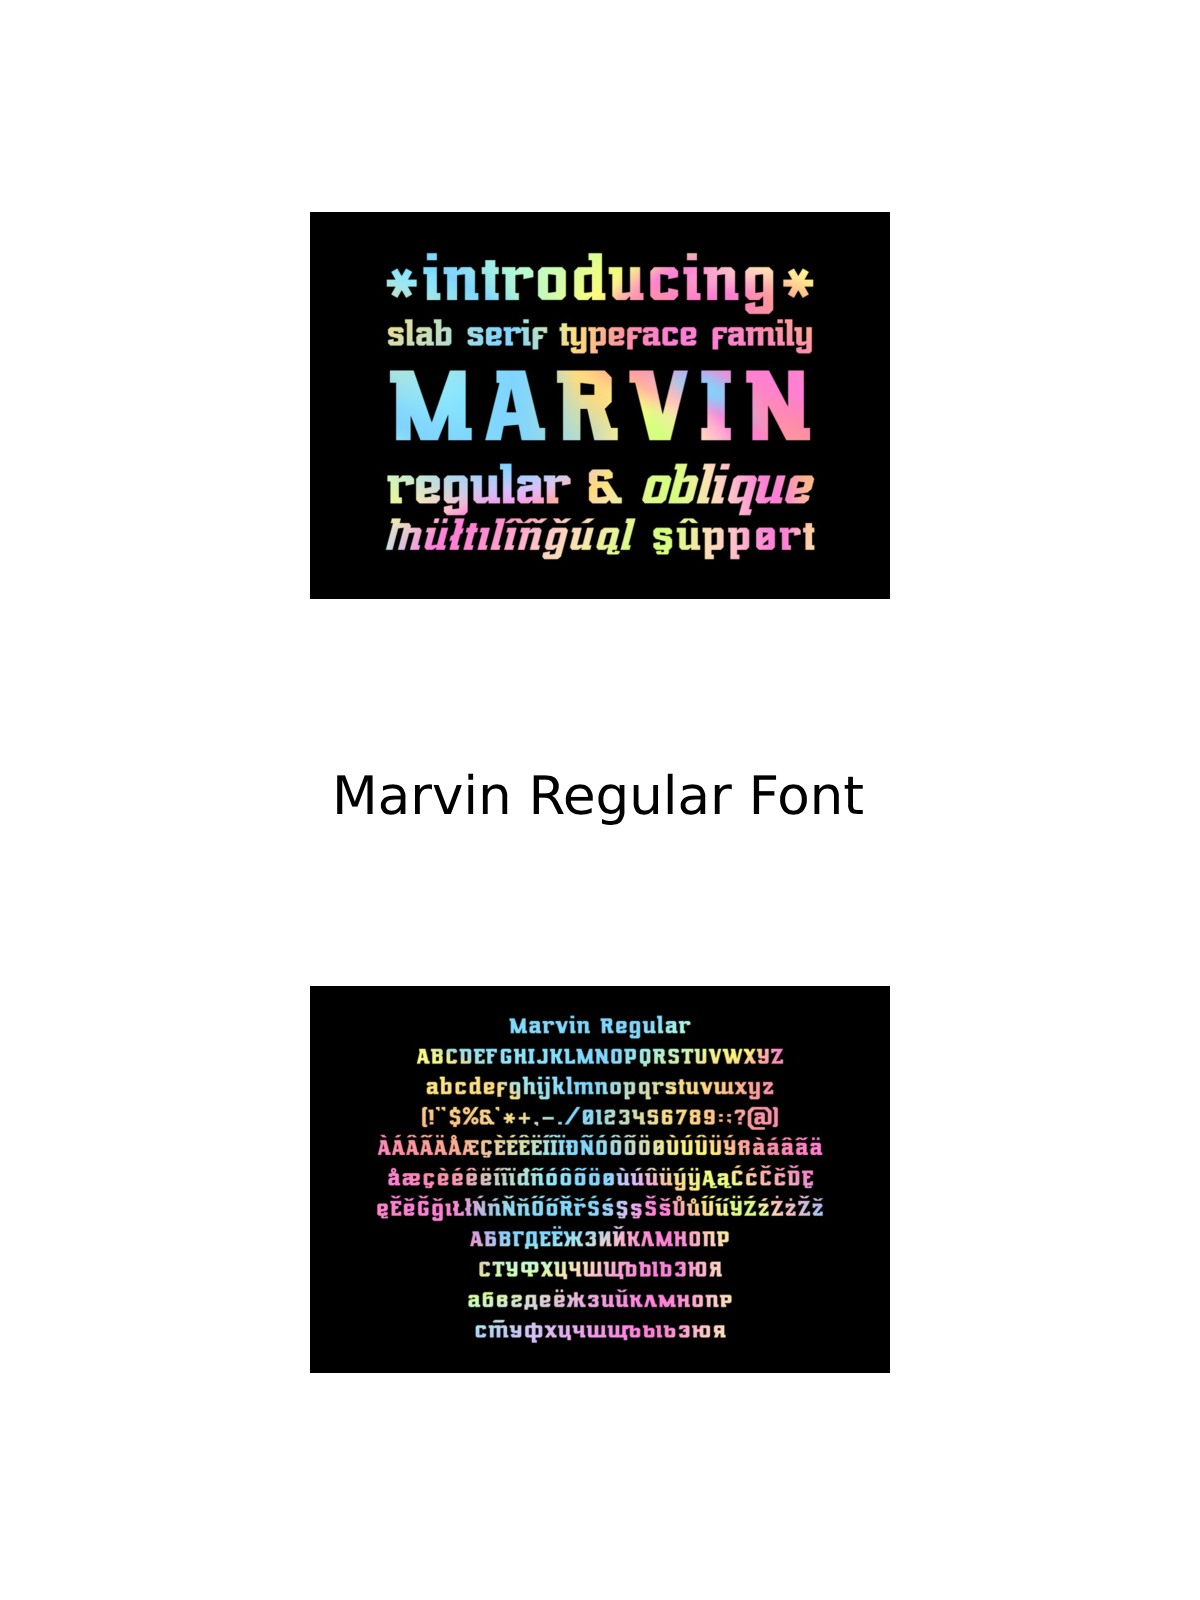 Marvin regular font pinterest image preview.